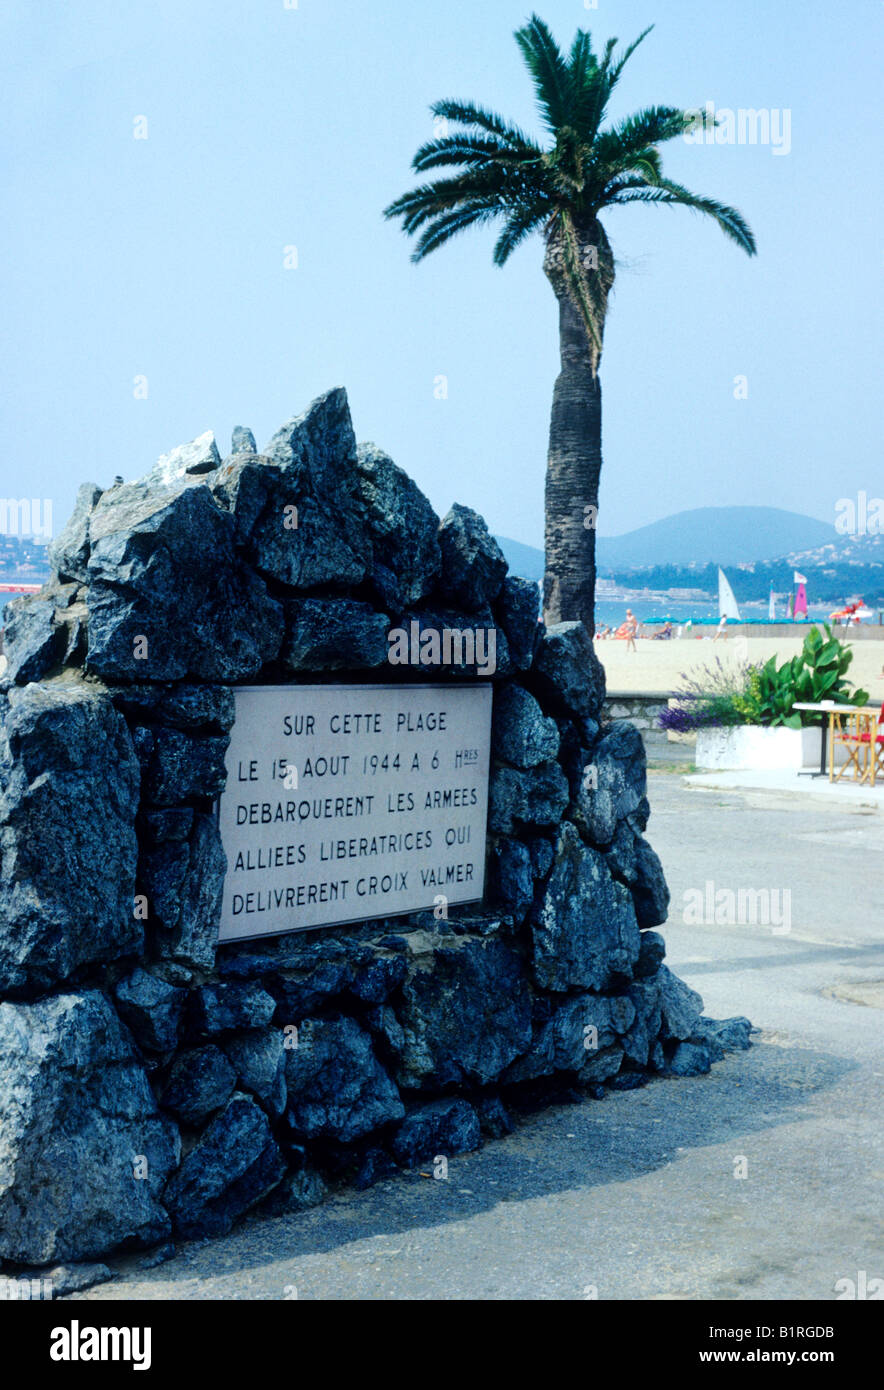 La Croix Valmer playa segunda guerra mundial placa conmemorativa de la liberación de Francia por los aliados 1944 lugar de desembarco aliado Cote d'Azur Foto de stock